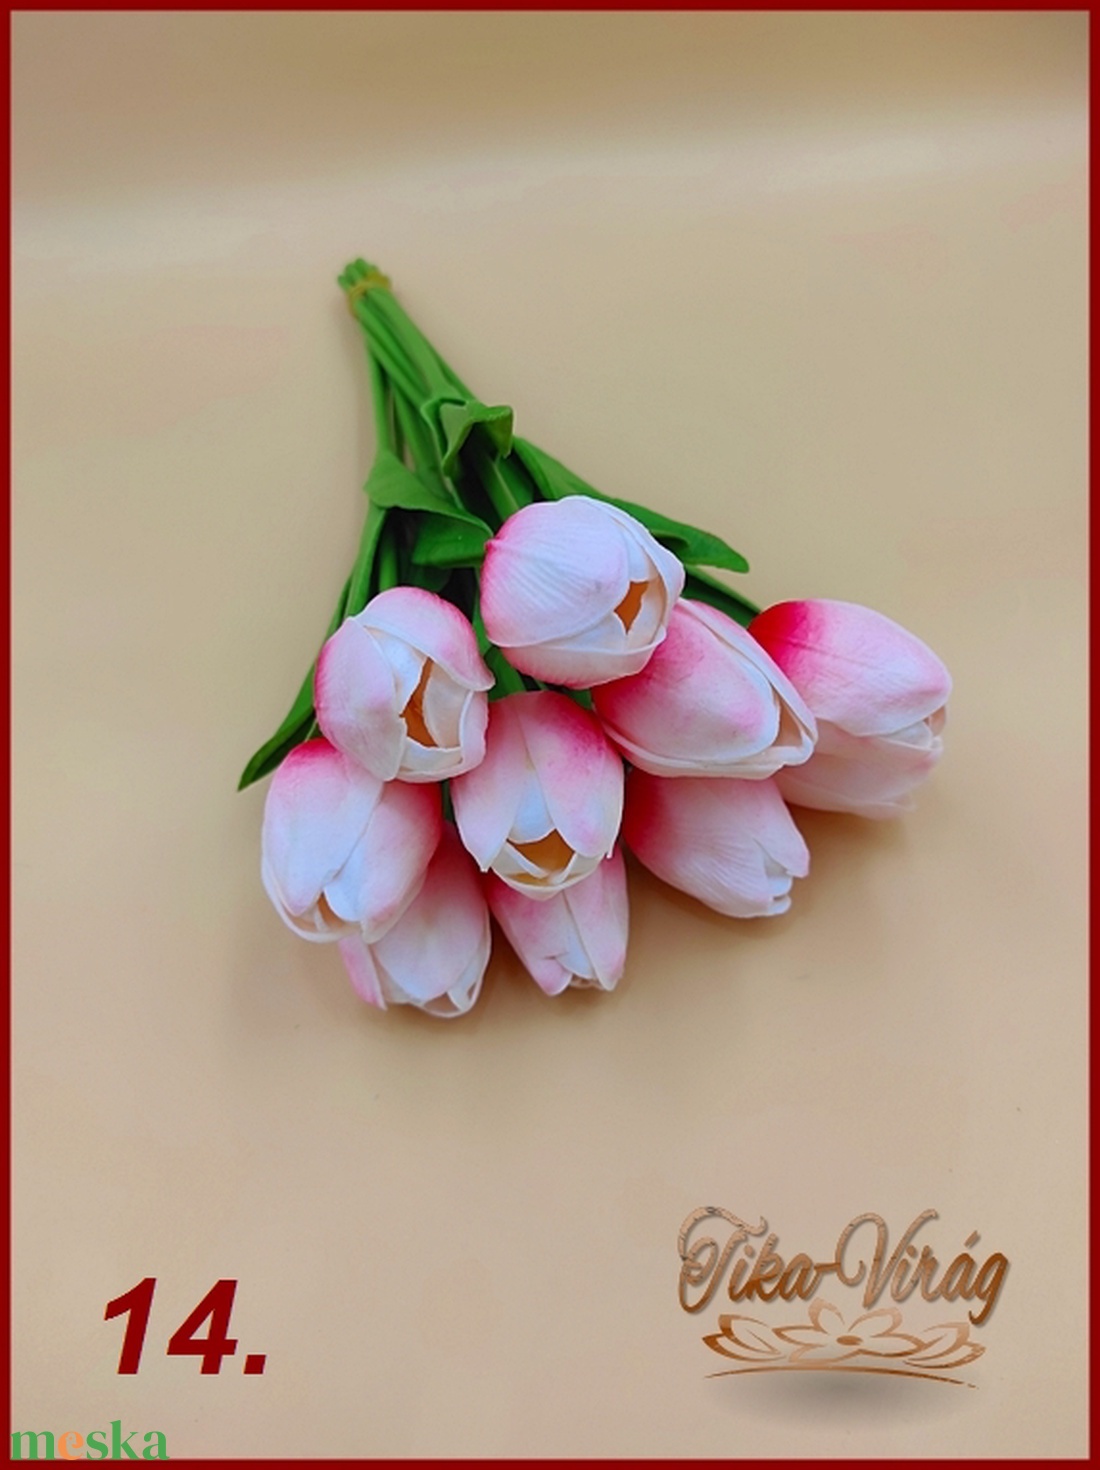 Gumi tulipán egy csokorban 10 szál van, 17 színben. - otthon & lakás - dekoráció - virágdísz és tartó - csokor & virágdísz - Meska.hu